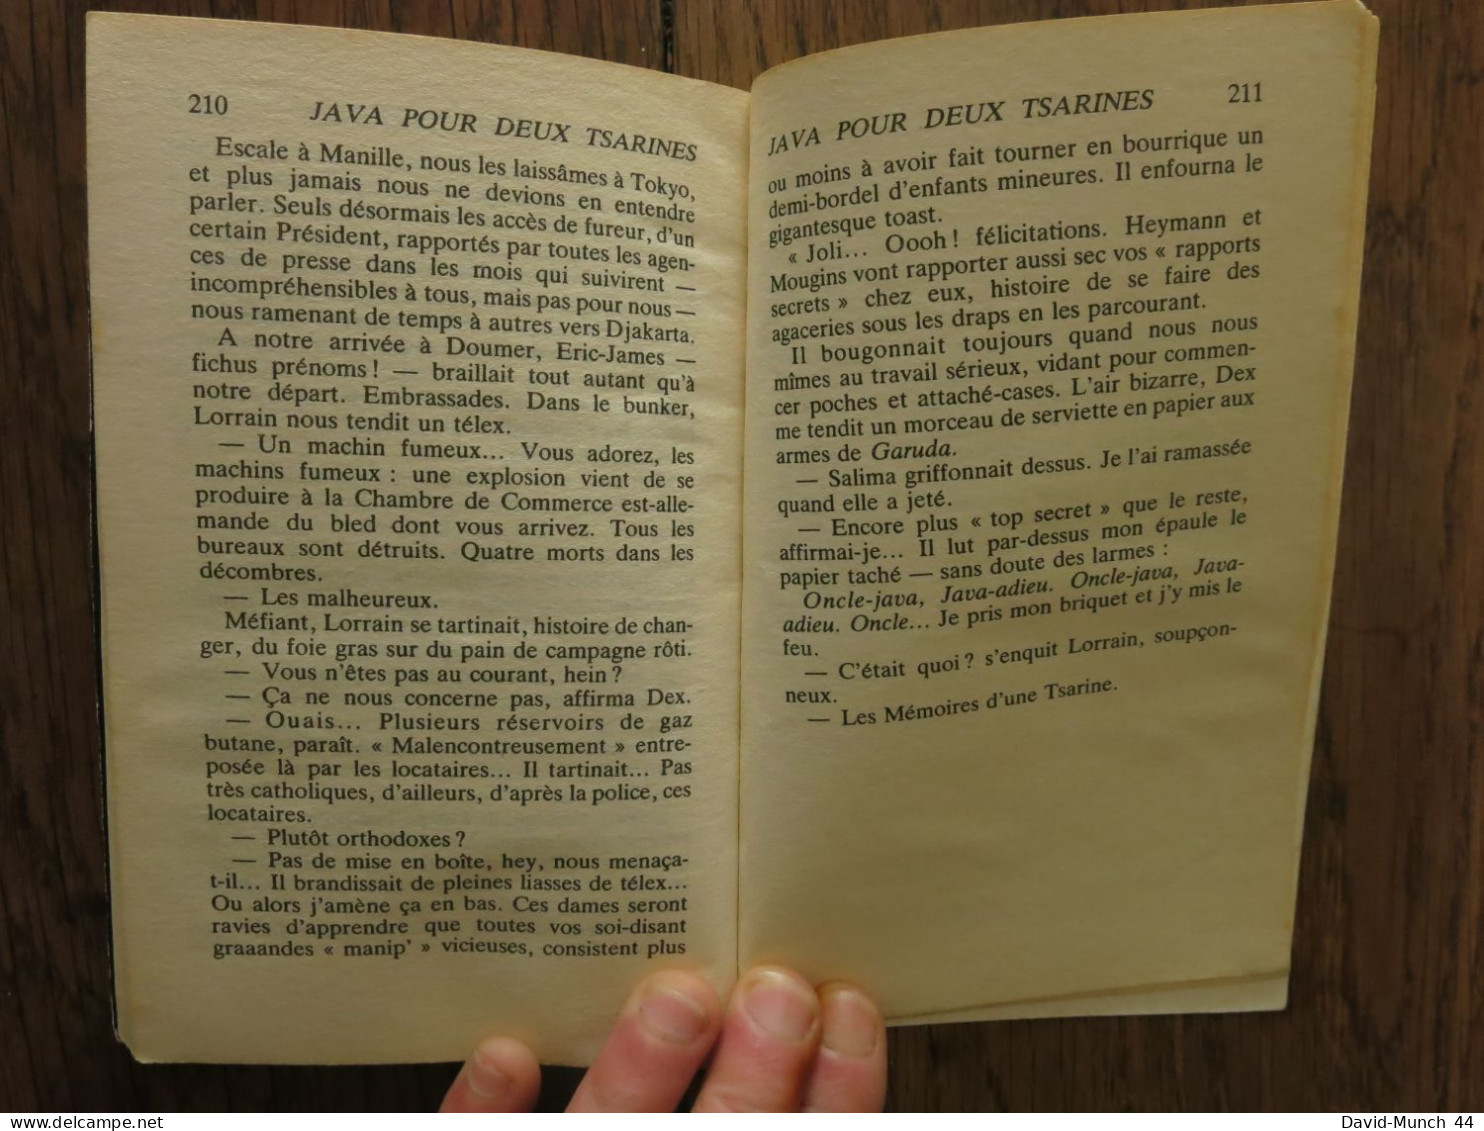 Java pour deux tsarines "Le monde en marche de Claude Rank. Editions Fleuve noir, Paris. 1981